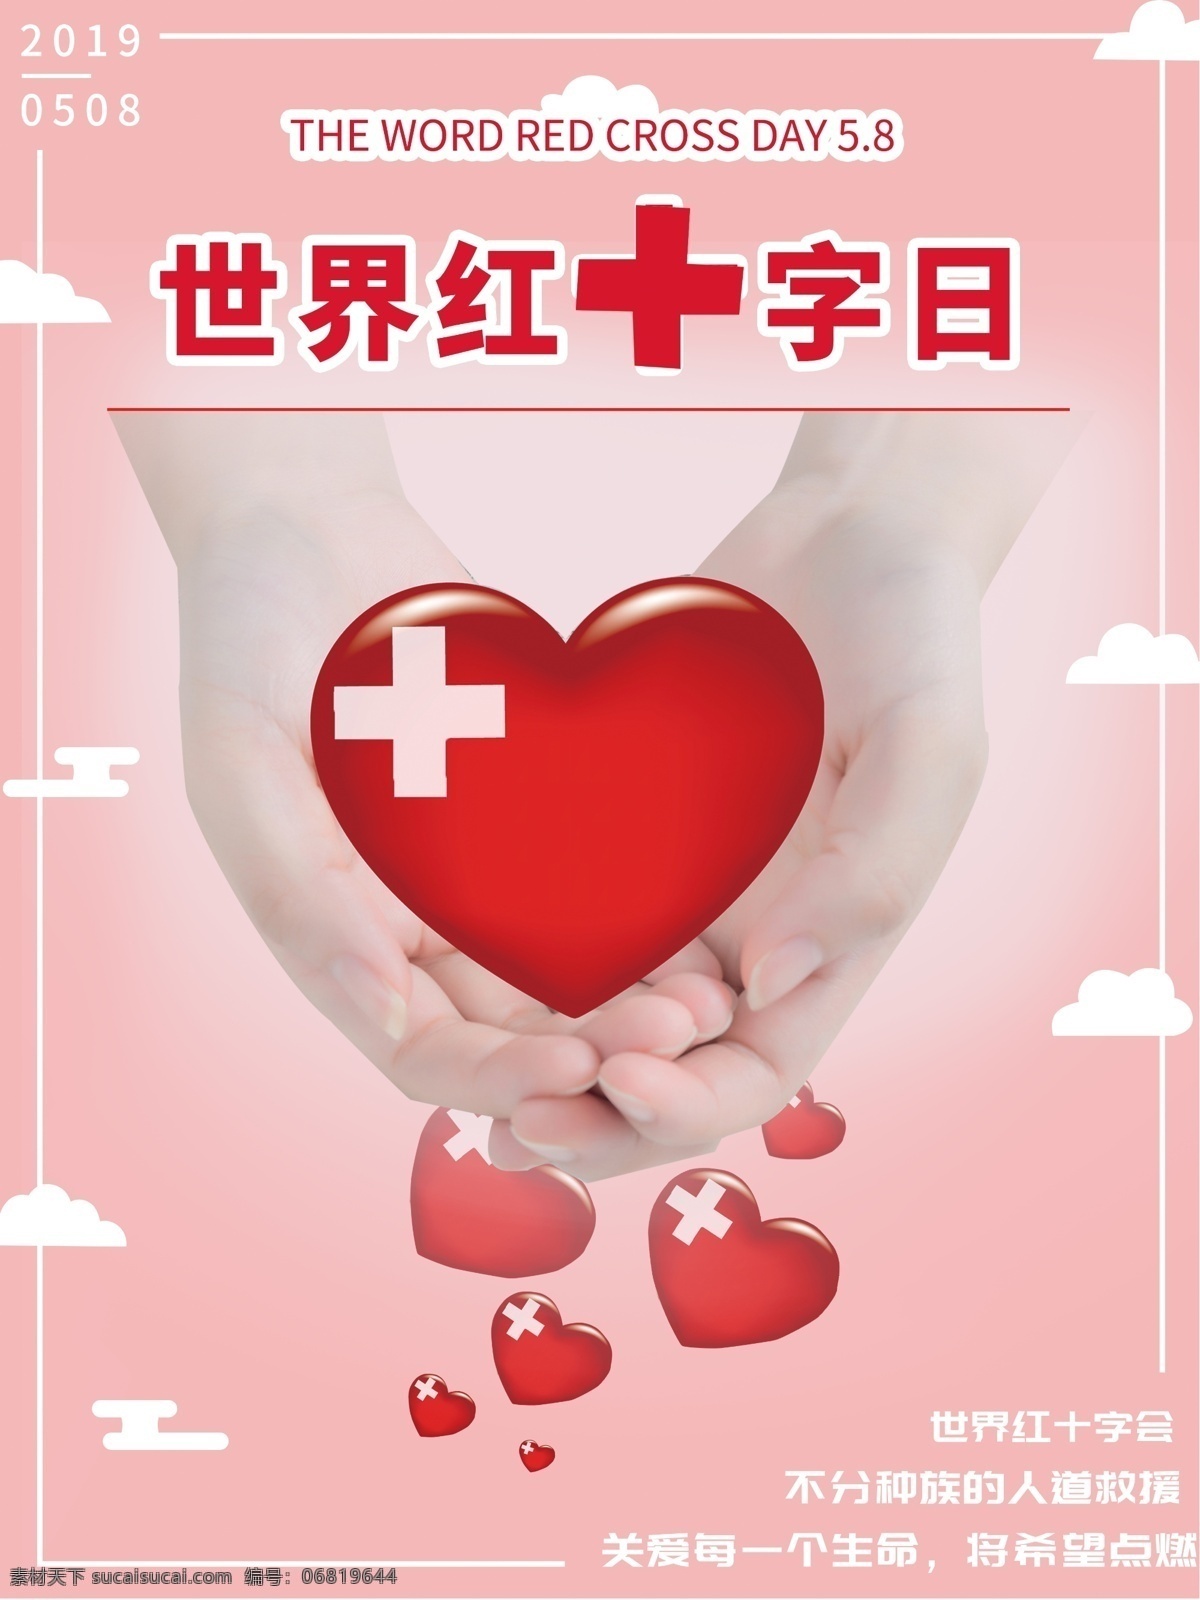 复古 简约 风 世界 红十字日 竖 版 海报 世界红十字 公益 奉献 红色 红心 云朵 粉色 橘色 爱心